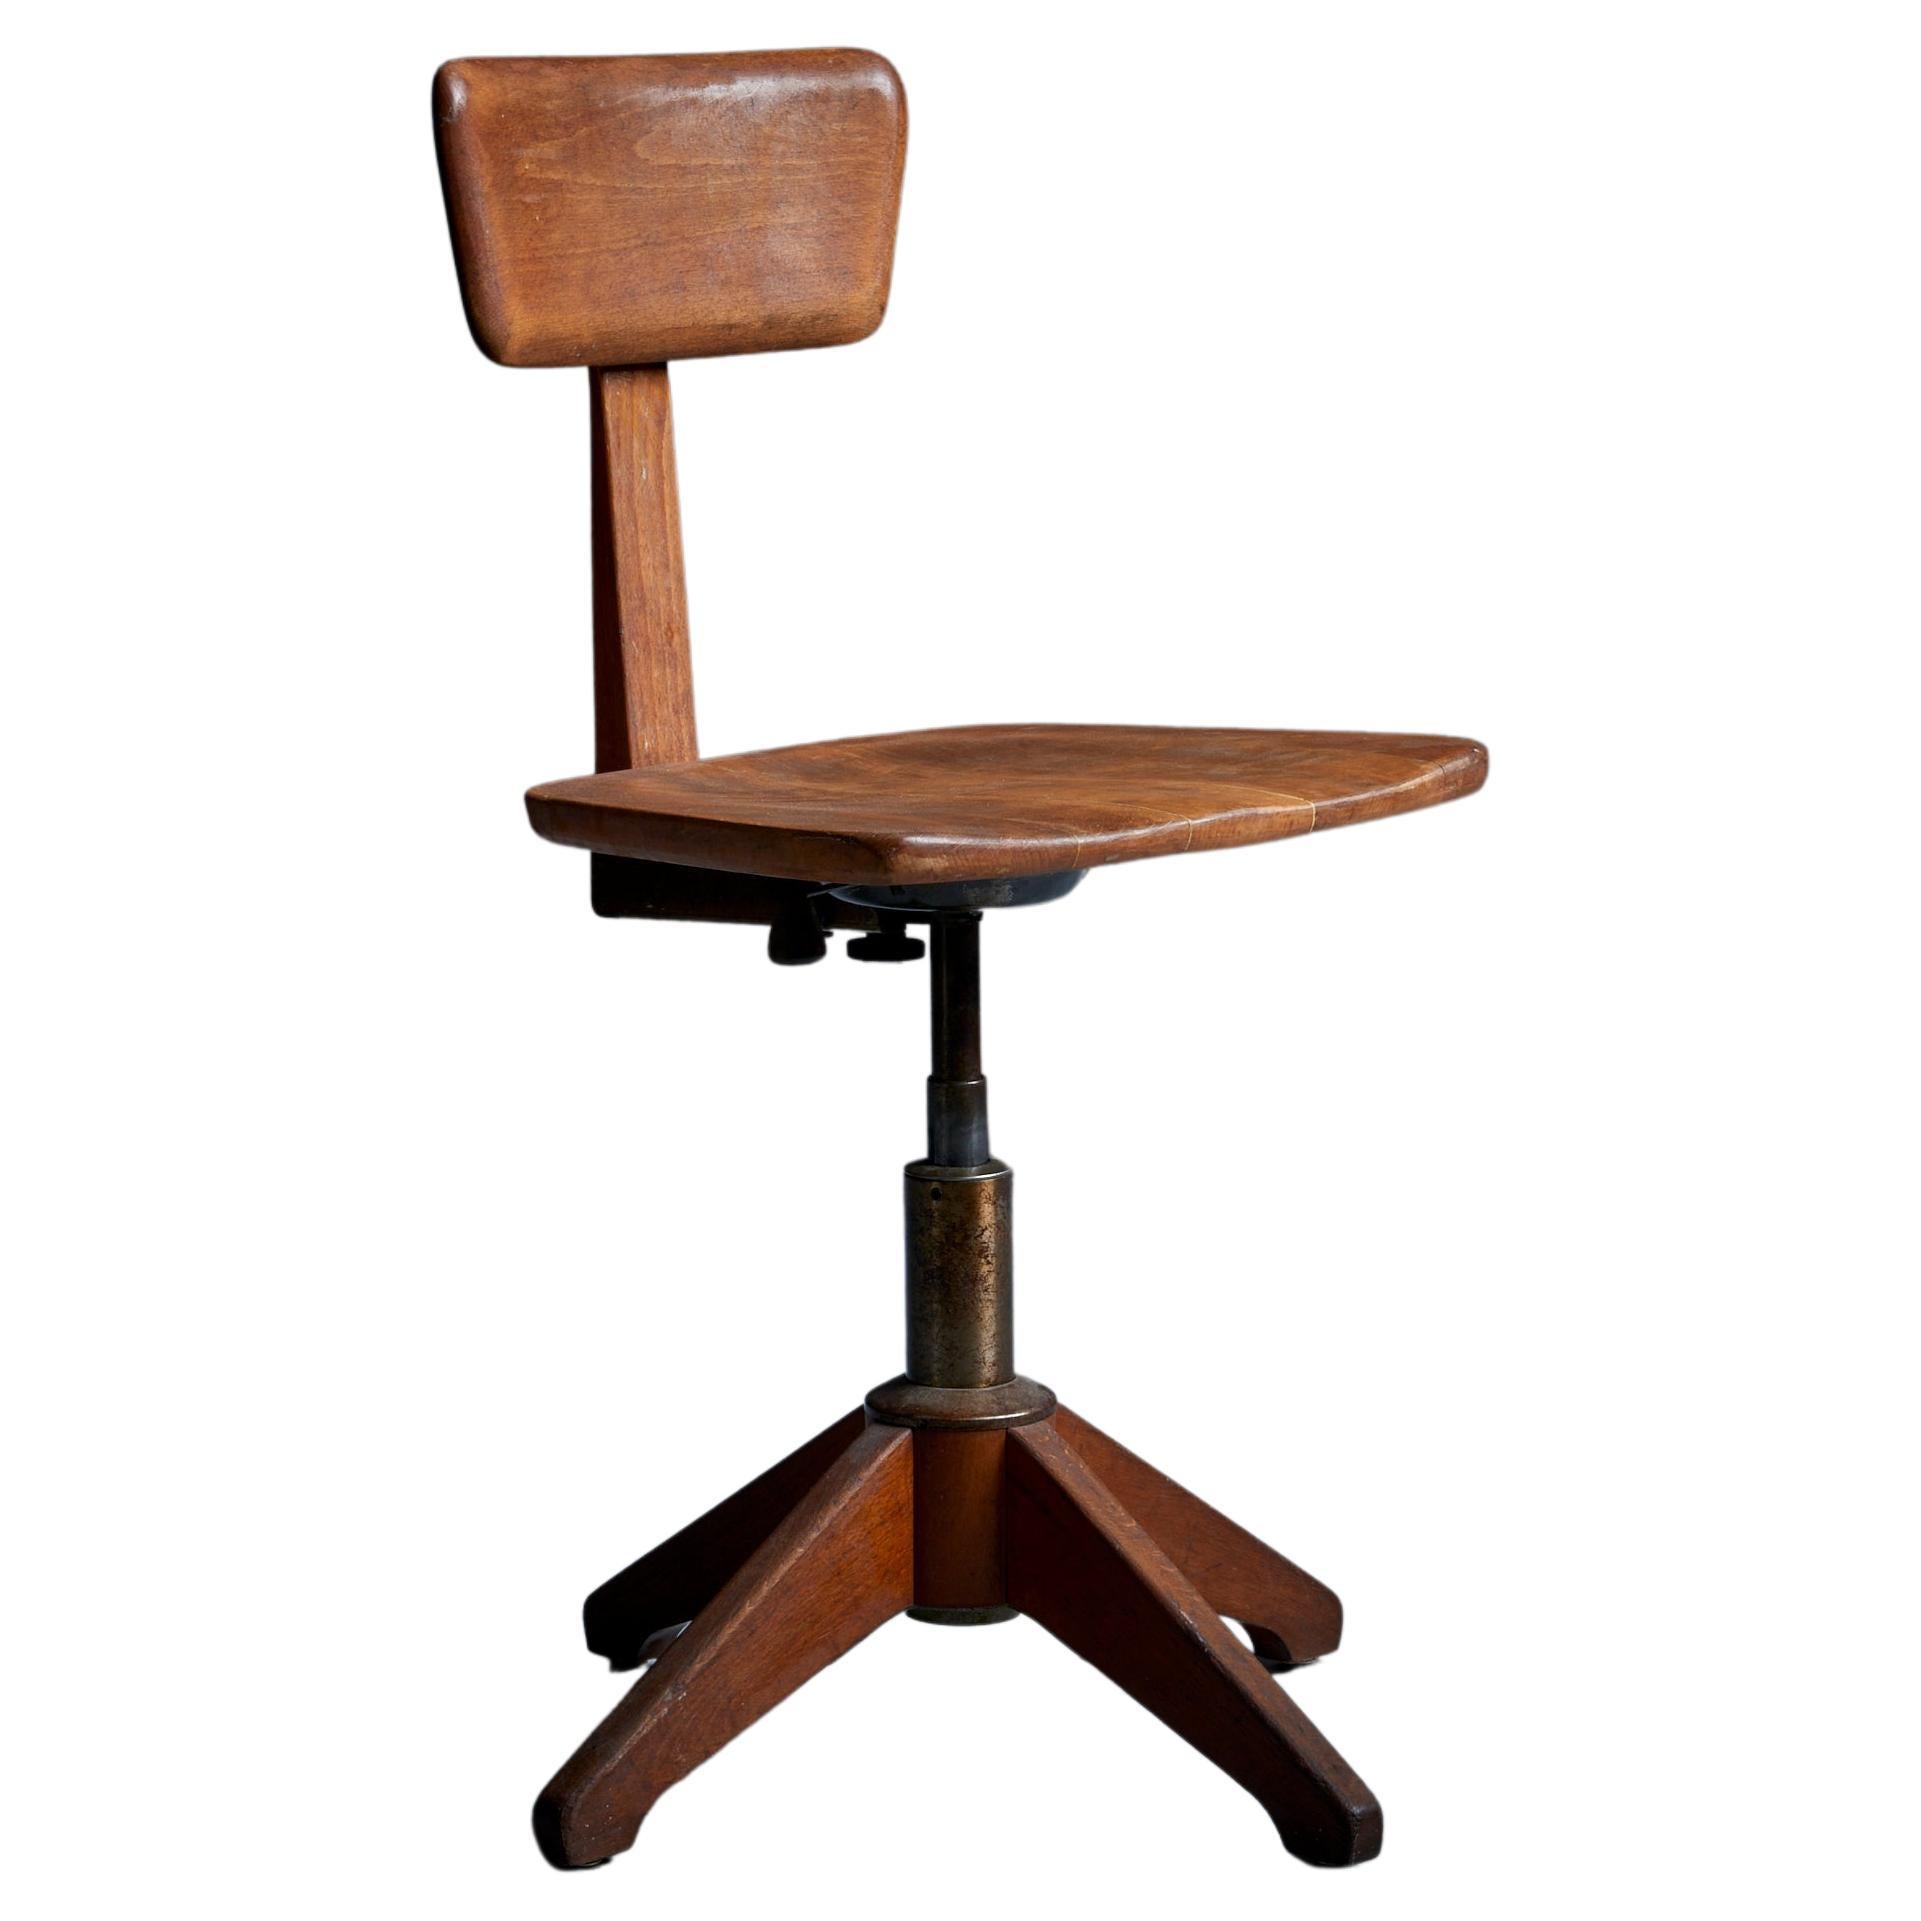 Early Sedus Desk or Office Swivel Chair 1940s Switzerland